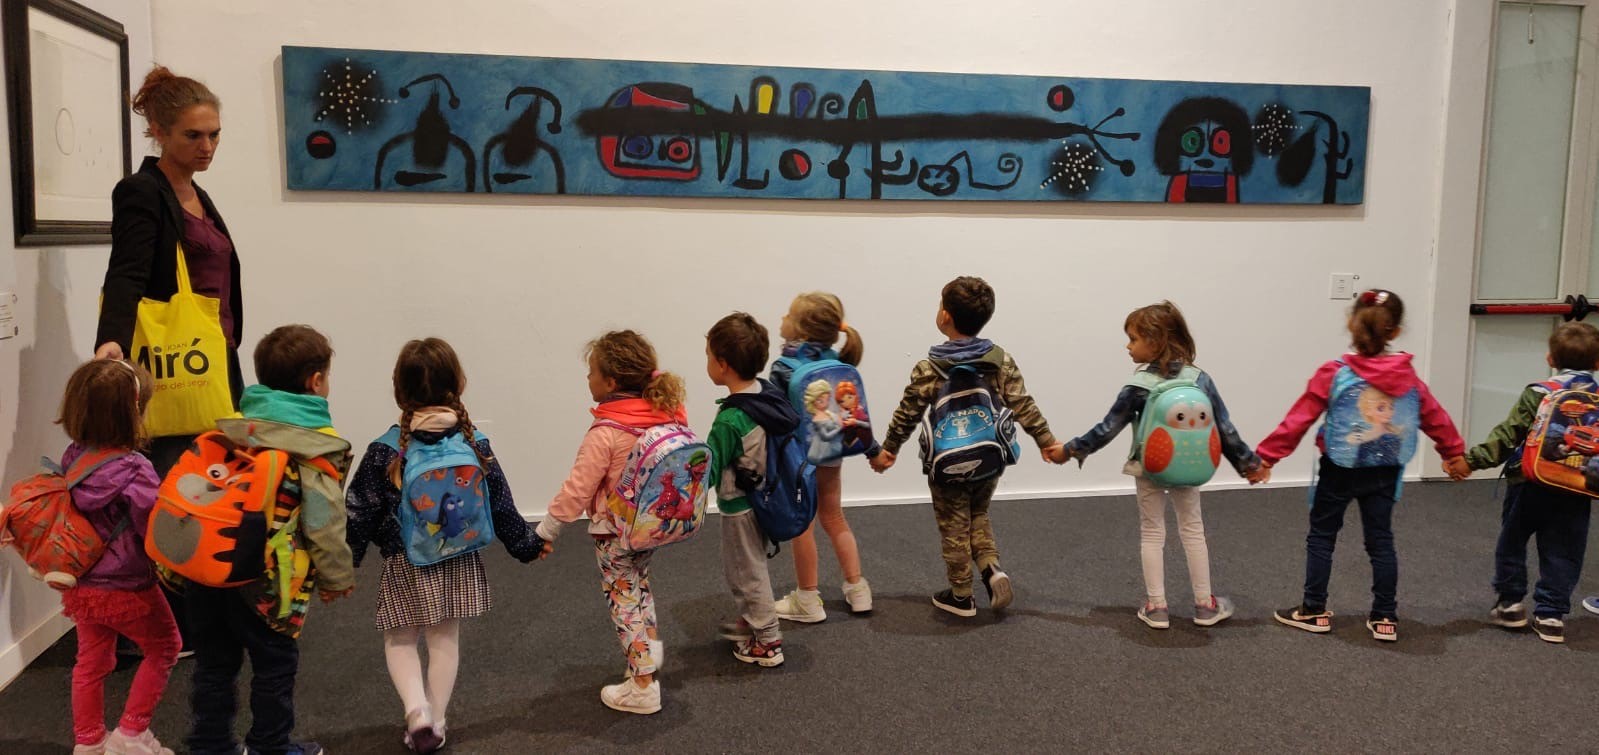 Joan Miró. Il linguaggio dei segni: oltre 15 mila visitatori per il primo mese di esposizione al PAN